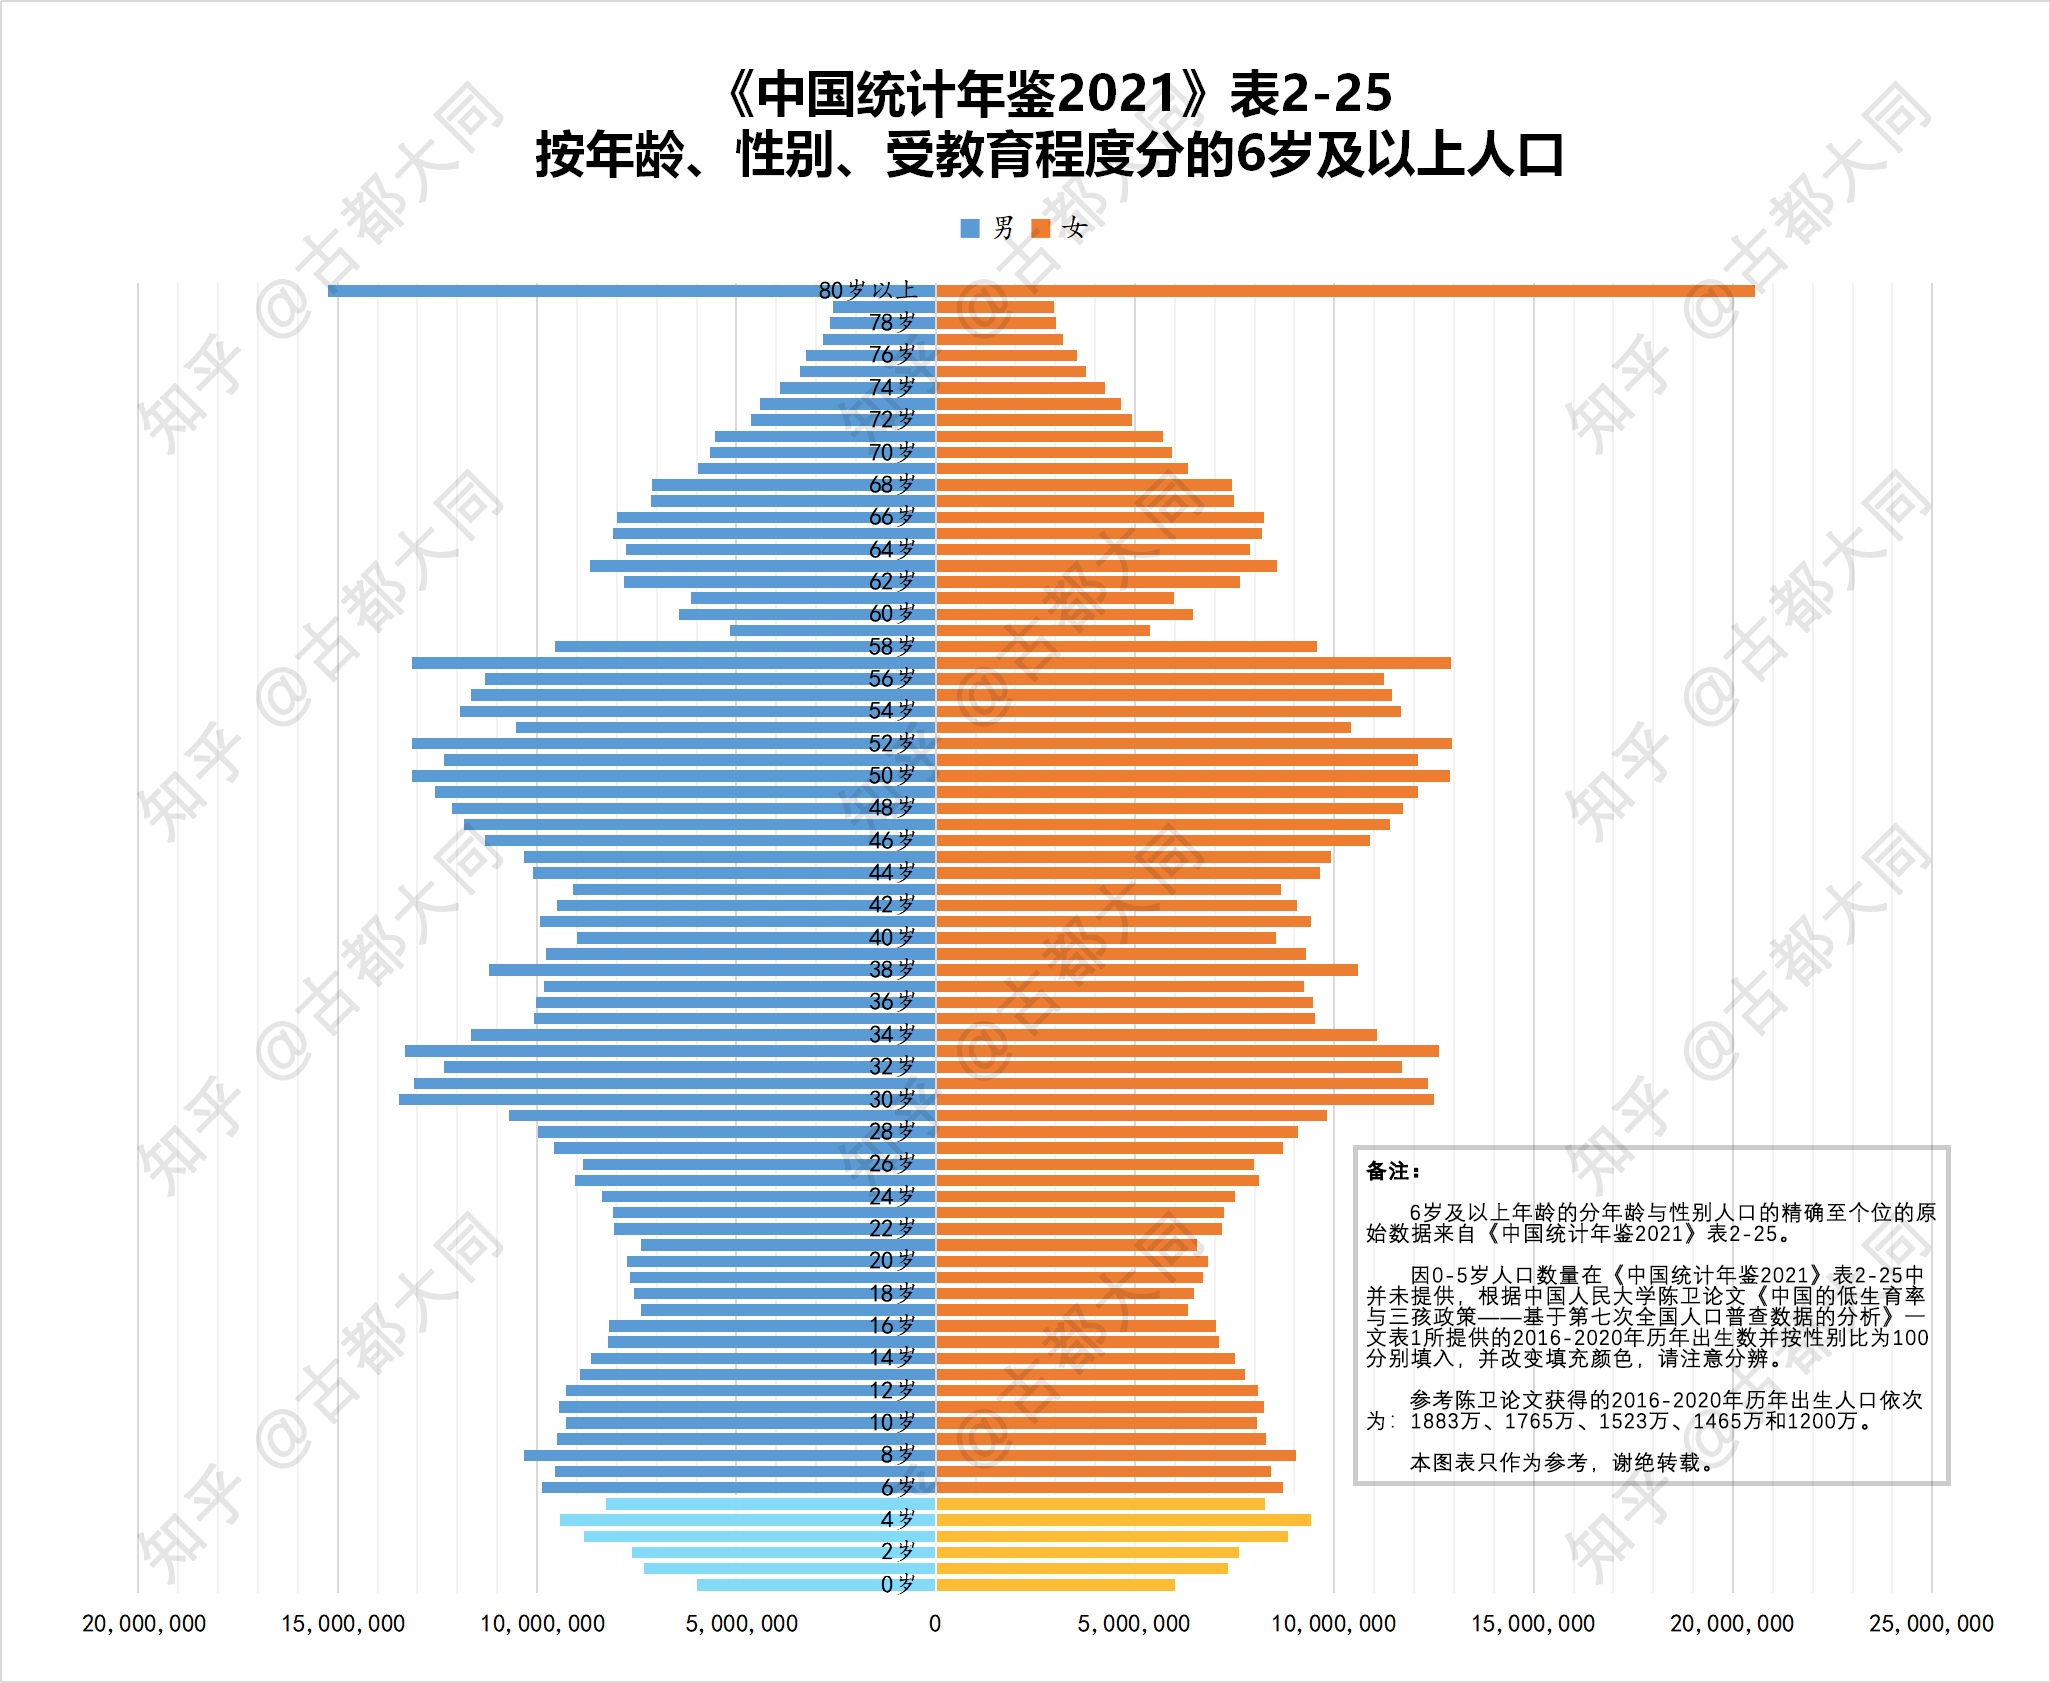 因0-5岁人口数量在《中国统计年鉴2021》表2-25中并未提供,根据中国